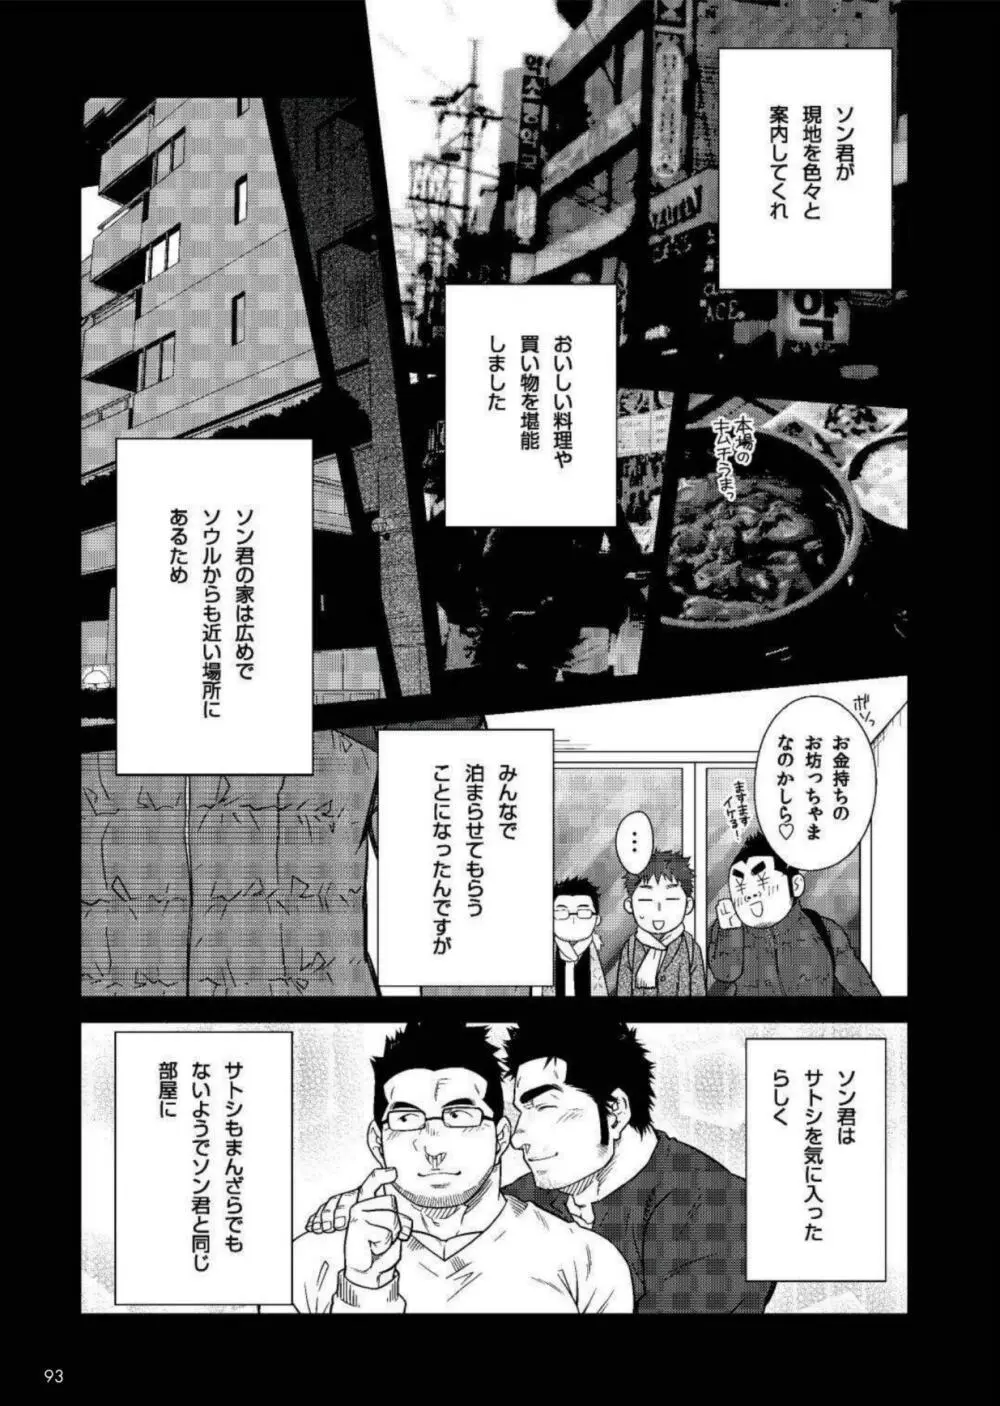 Terujirou - 晃次郎 - Badi Bʌ́di (バディ) 119 (Jan 2016) Page.3